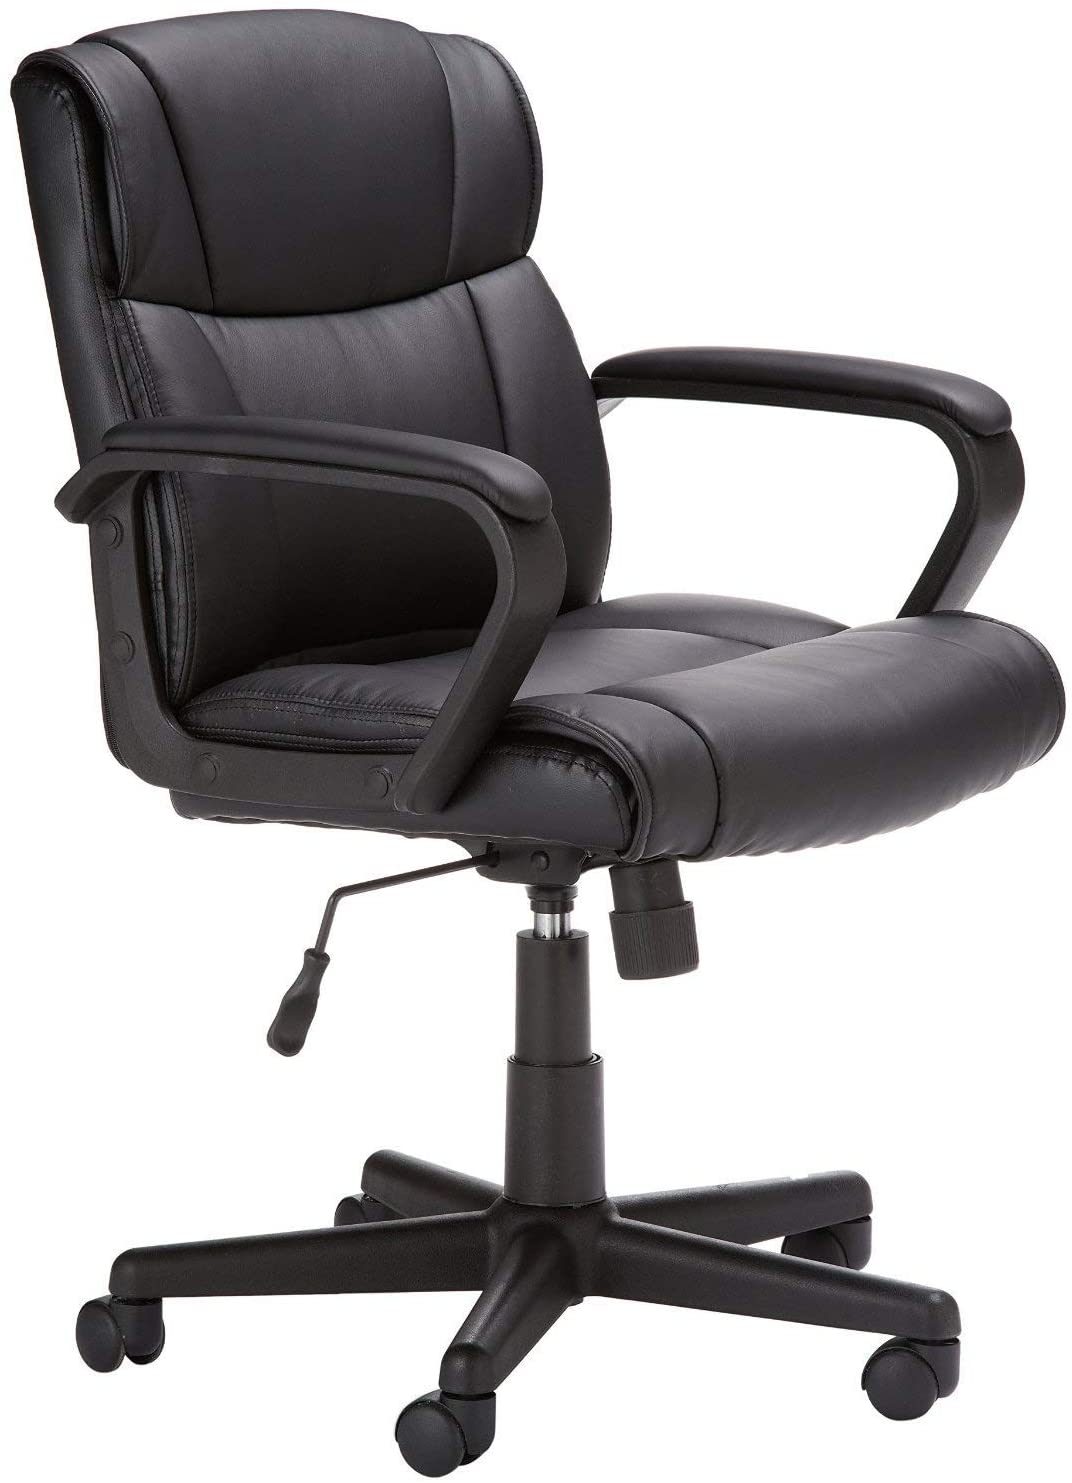 Amazon Basics Office Chair